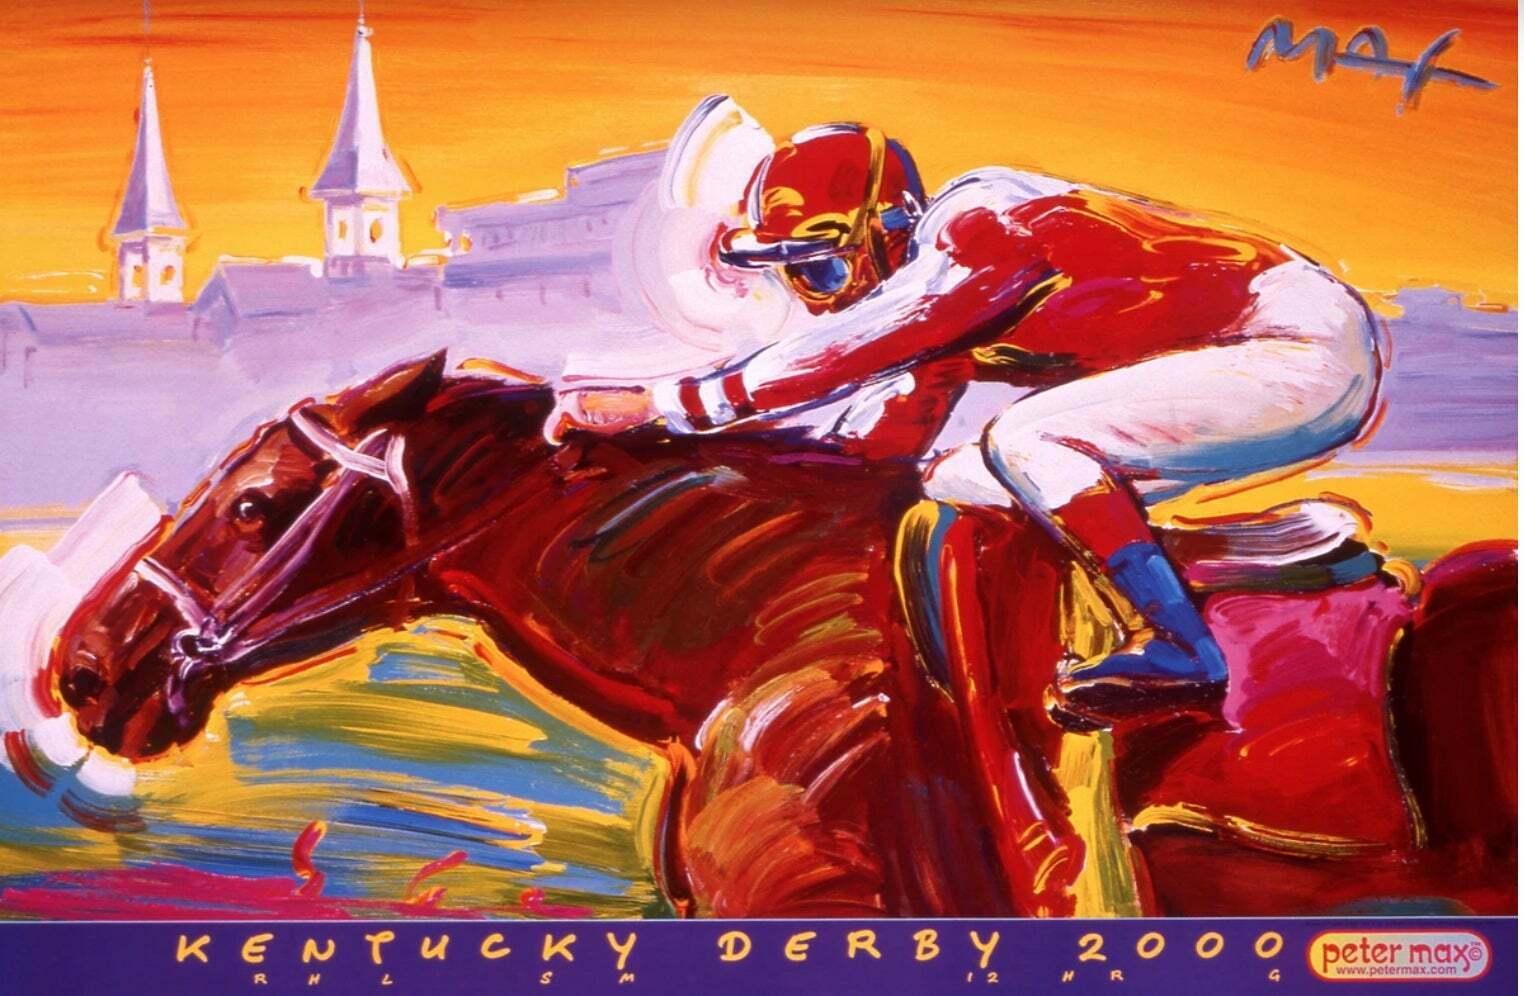 kentucky derby poster